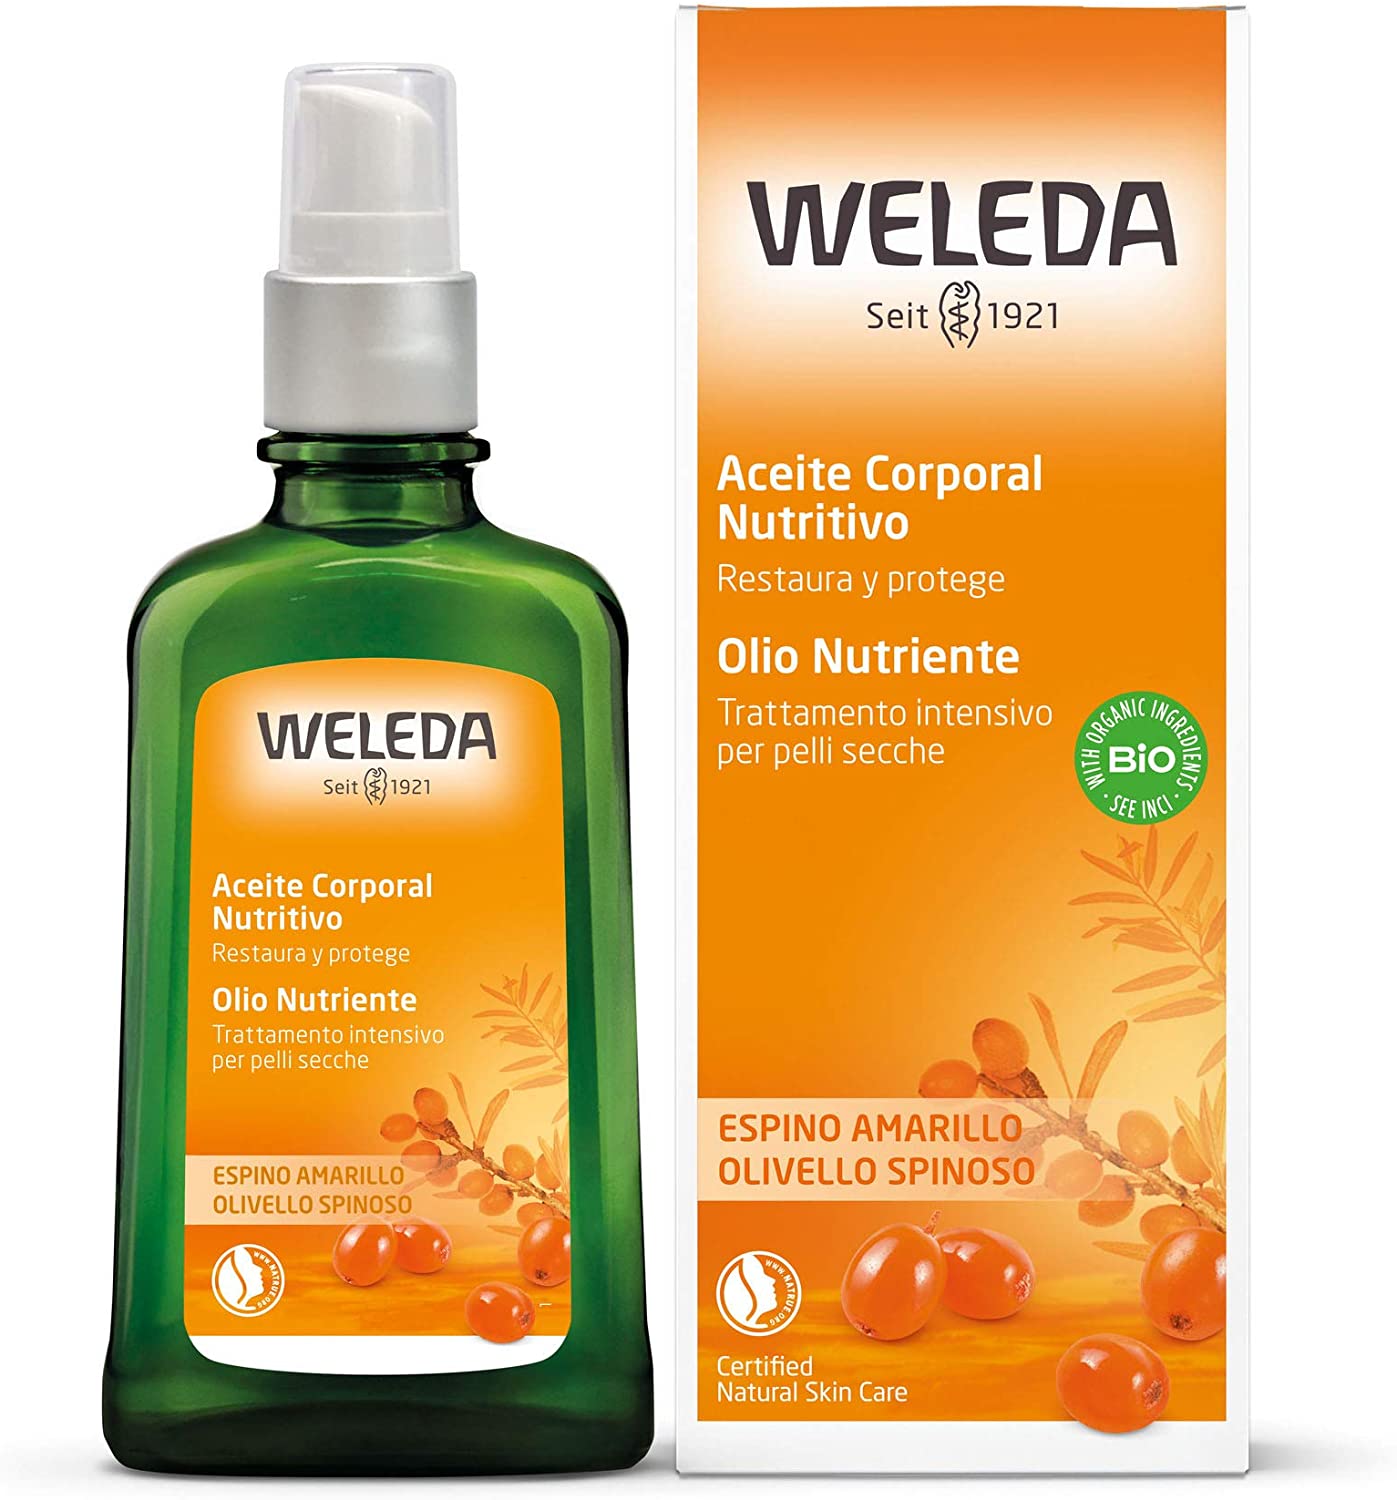 WELEDA sea buckthorn body oil, set of 1, 100 ml